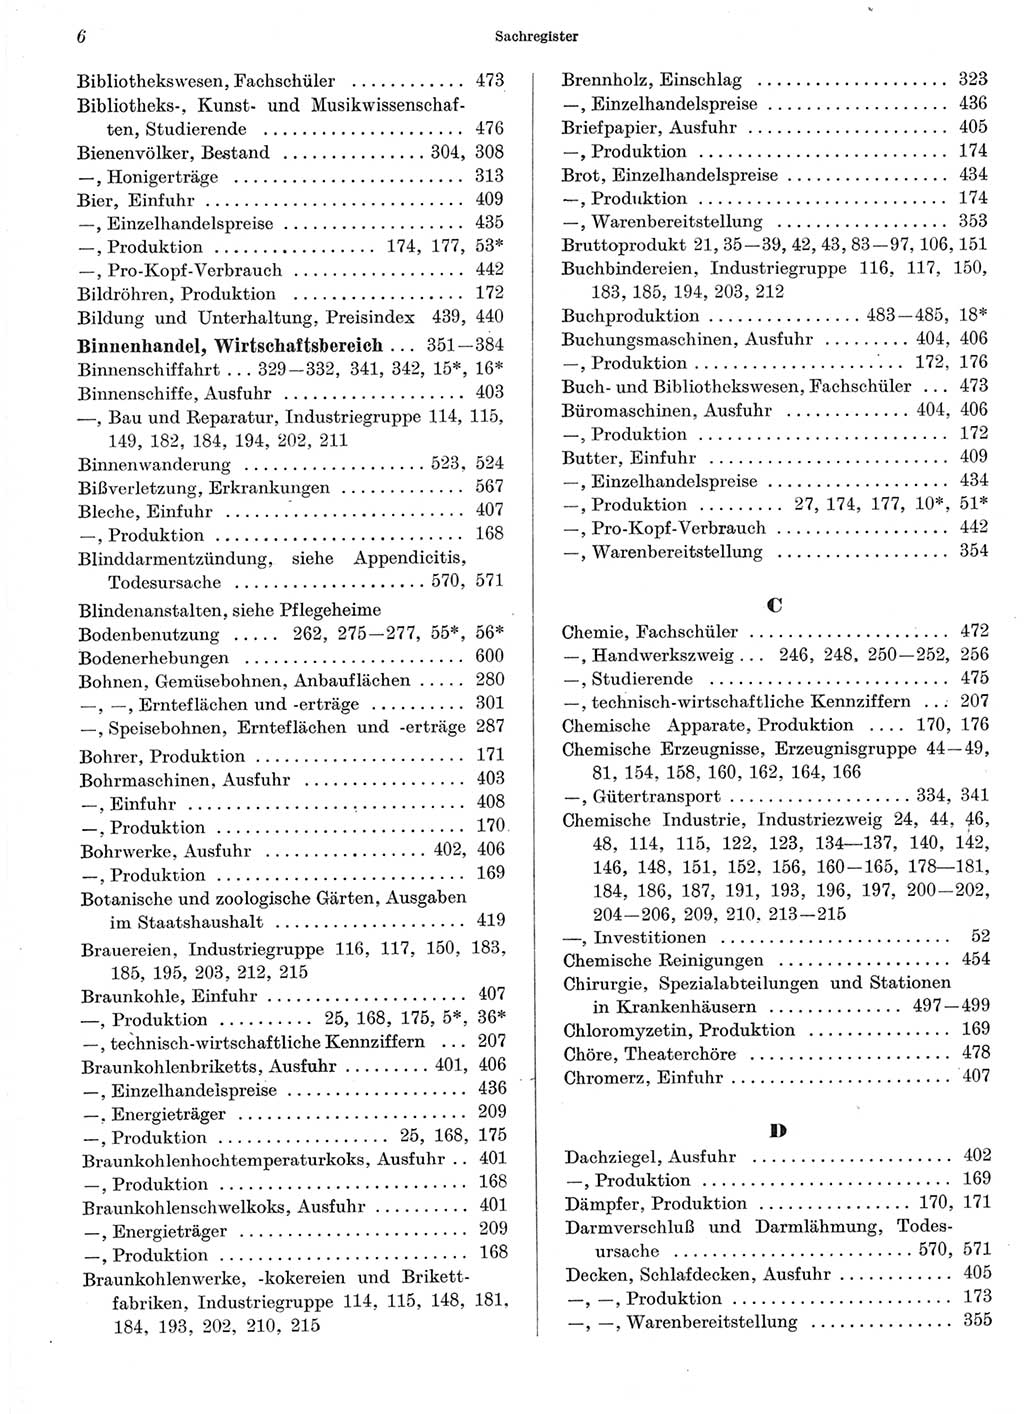 Statistisches Jahrbuch der Deutschen Demokratischen Republik (DDR) 1966, Seite 6 (Stat. Jb. DDR 1966, S. 6)